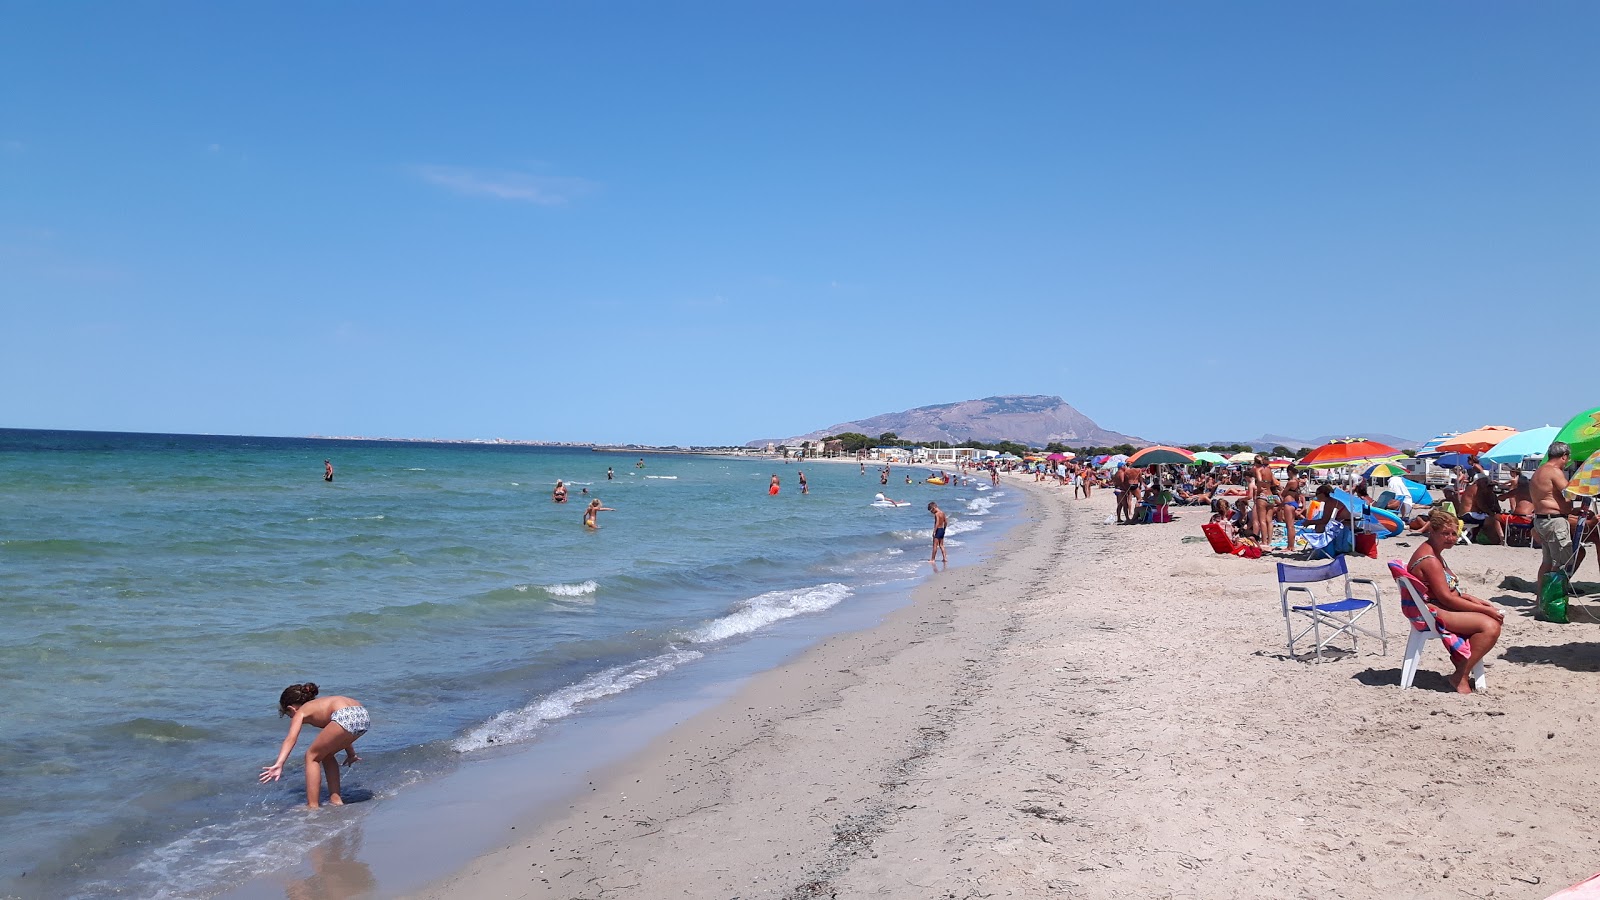 Foto de Spiaggia Marausa con recta y larga